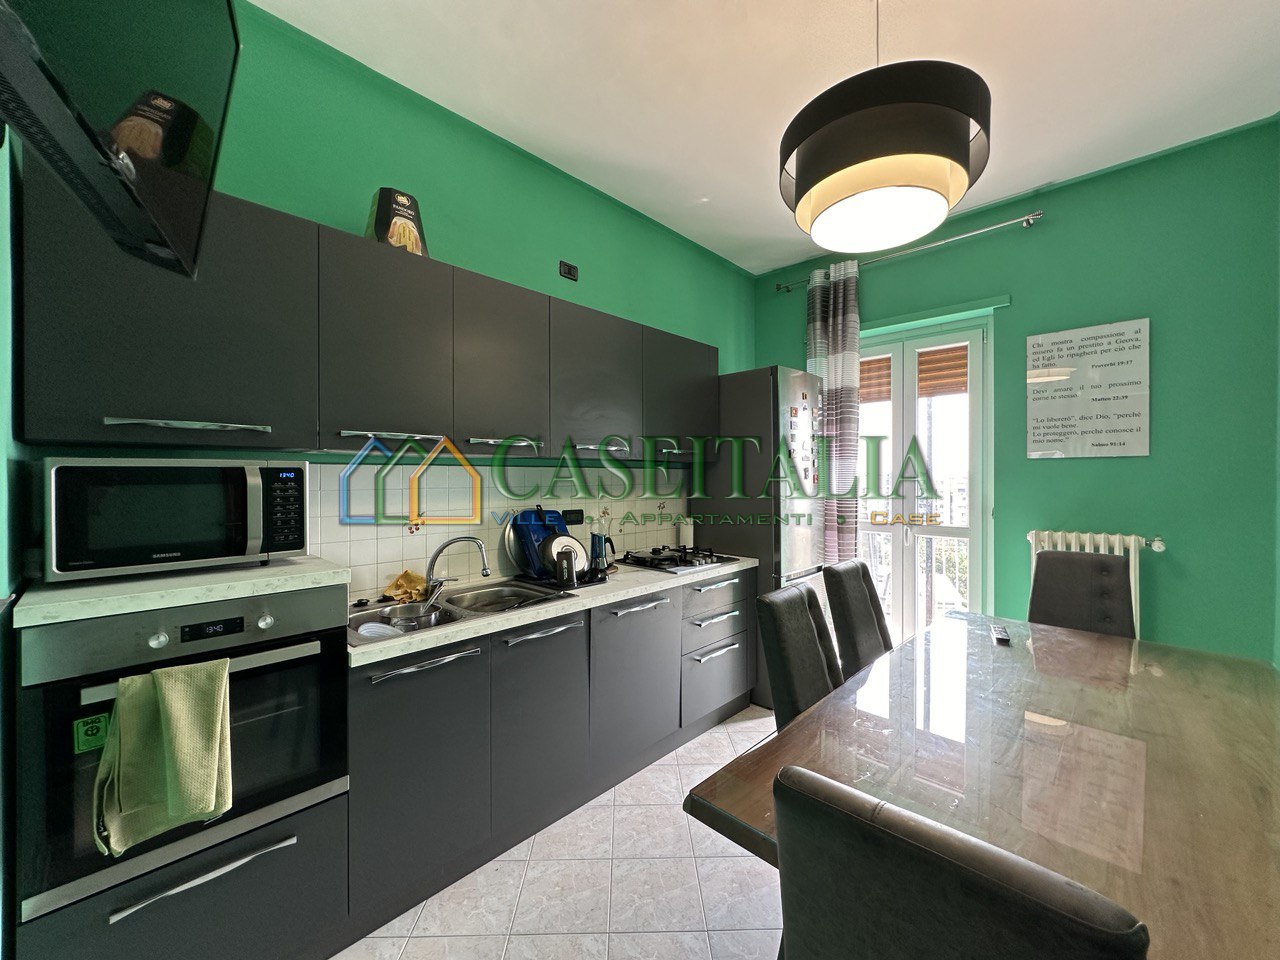 Appartamento in vendita a Rivoli, 3 locali, prezzo € 110.000 | PortaleAgenzieImmobiliari.it